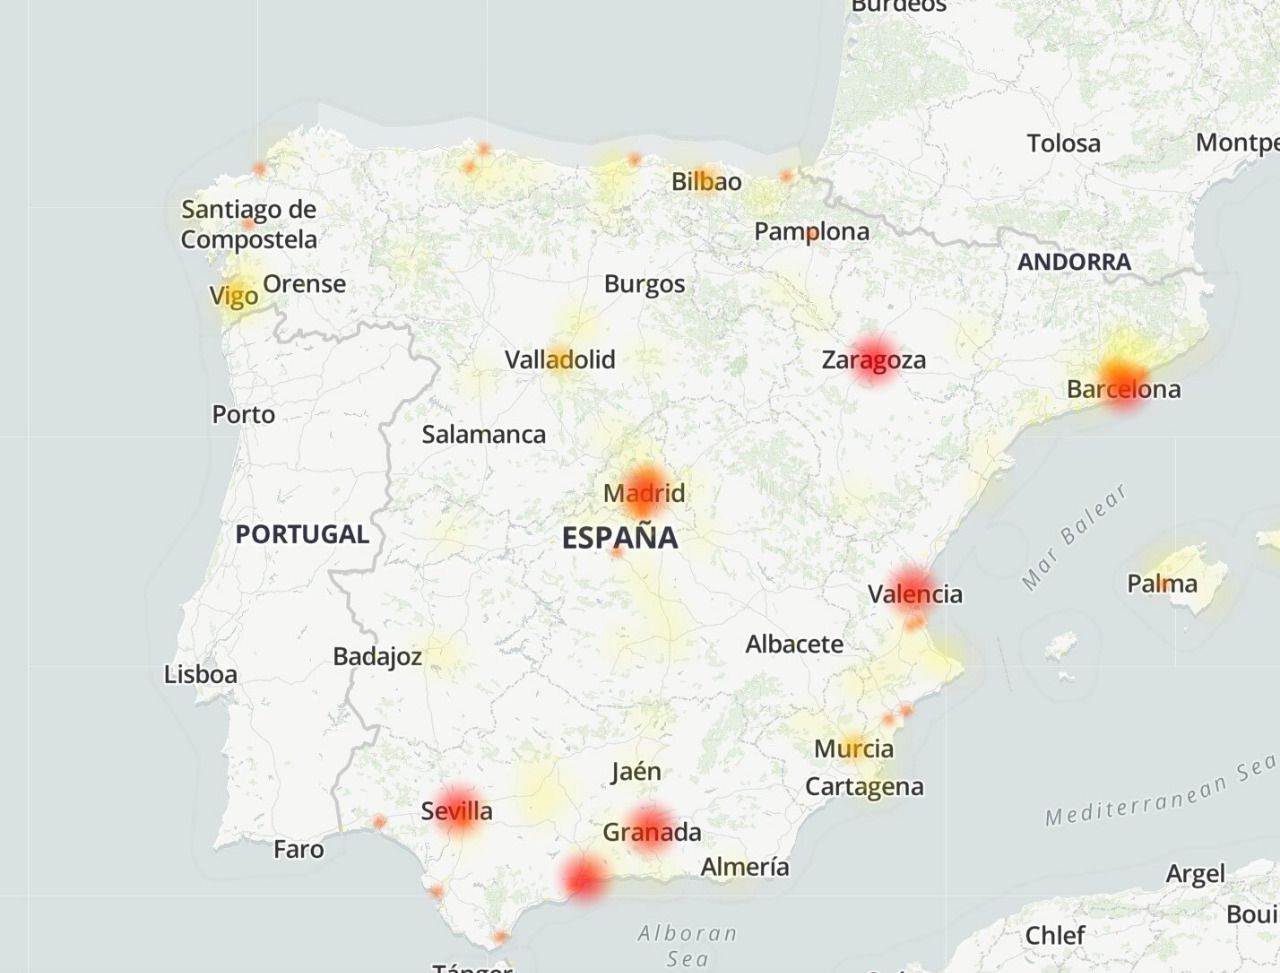 Mapa de fallos en España. Fuente: Downdetector